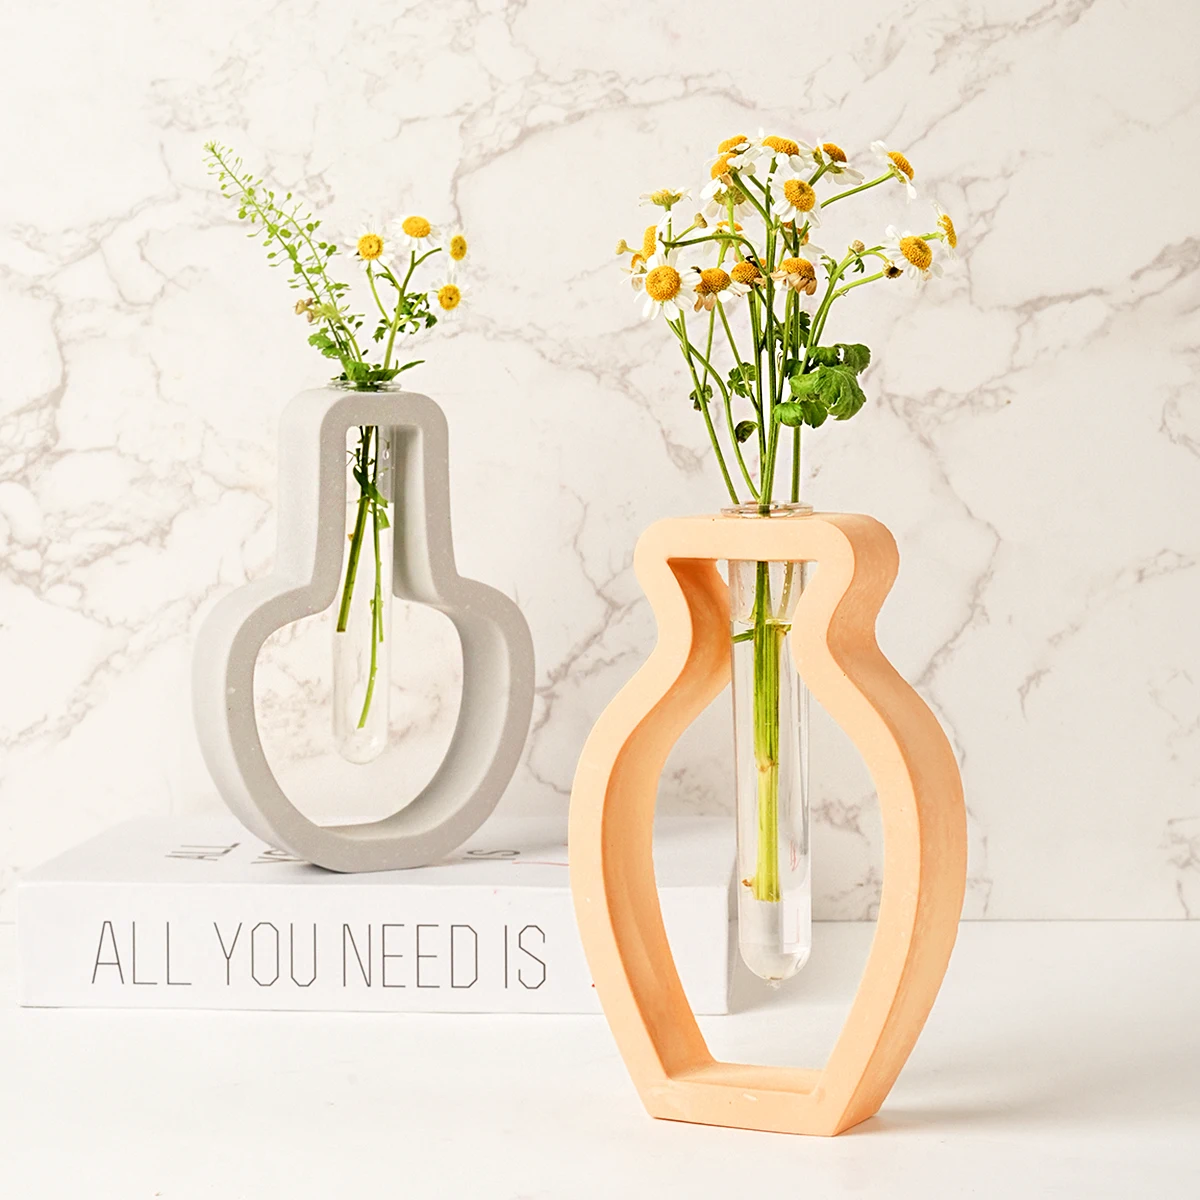 

Креативная форма в форме лампы для вазы, 3D тестовая трубка, форма для гидропонной вазы, гипсовый керамический клей в форме капли, инструмент для рукоделия и расположения цветов